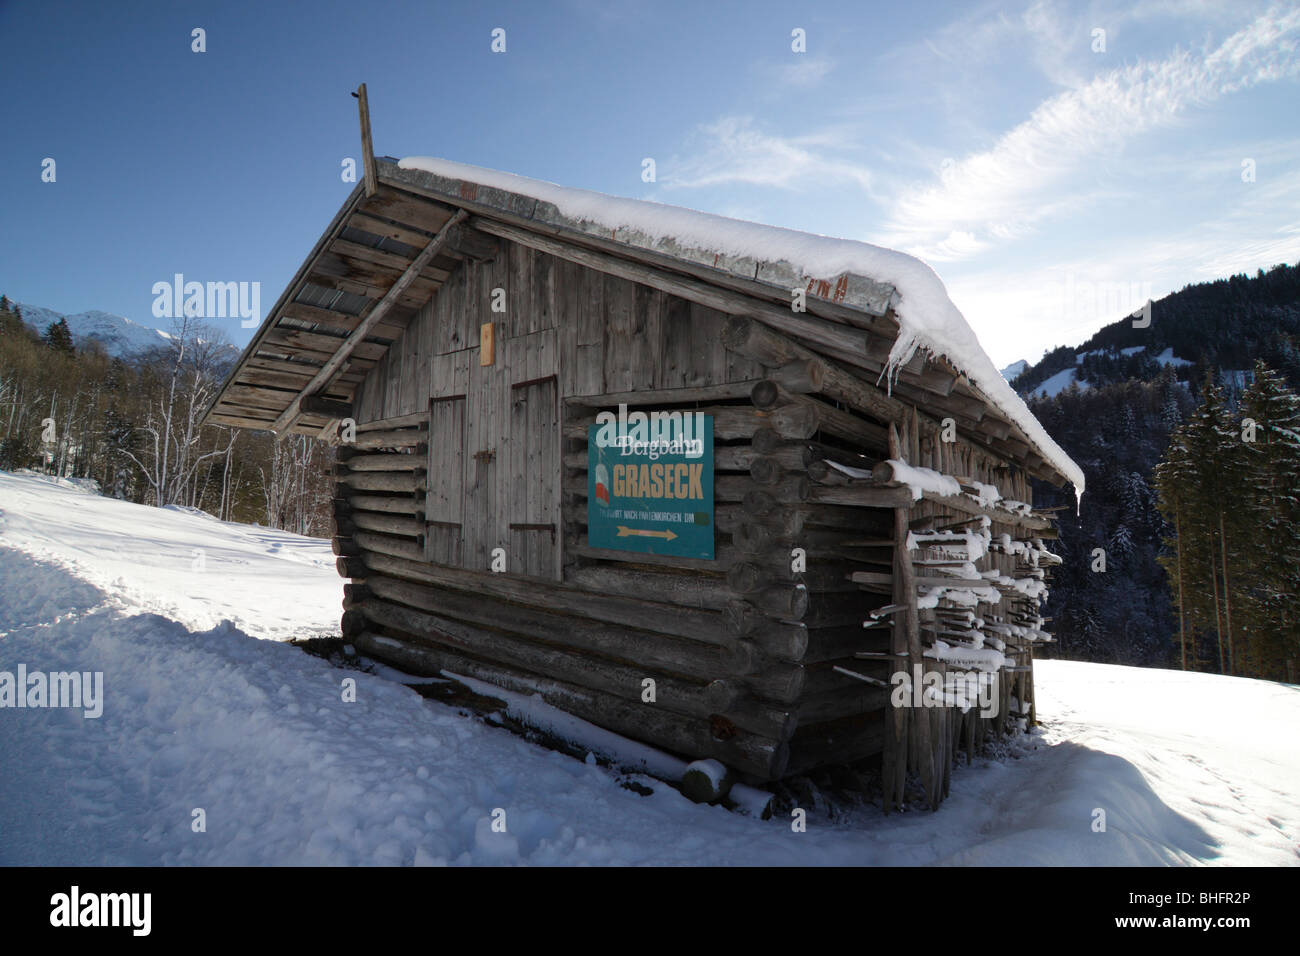 Una capanna nelle Alpi con un segno per il Graseck funivia su una chiara e luminosa giornata invernale con un sacco di neve. Foto Stock